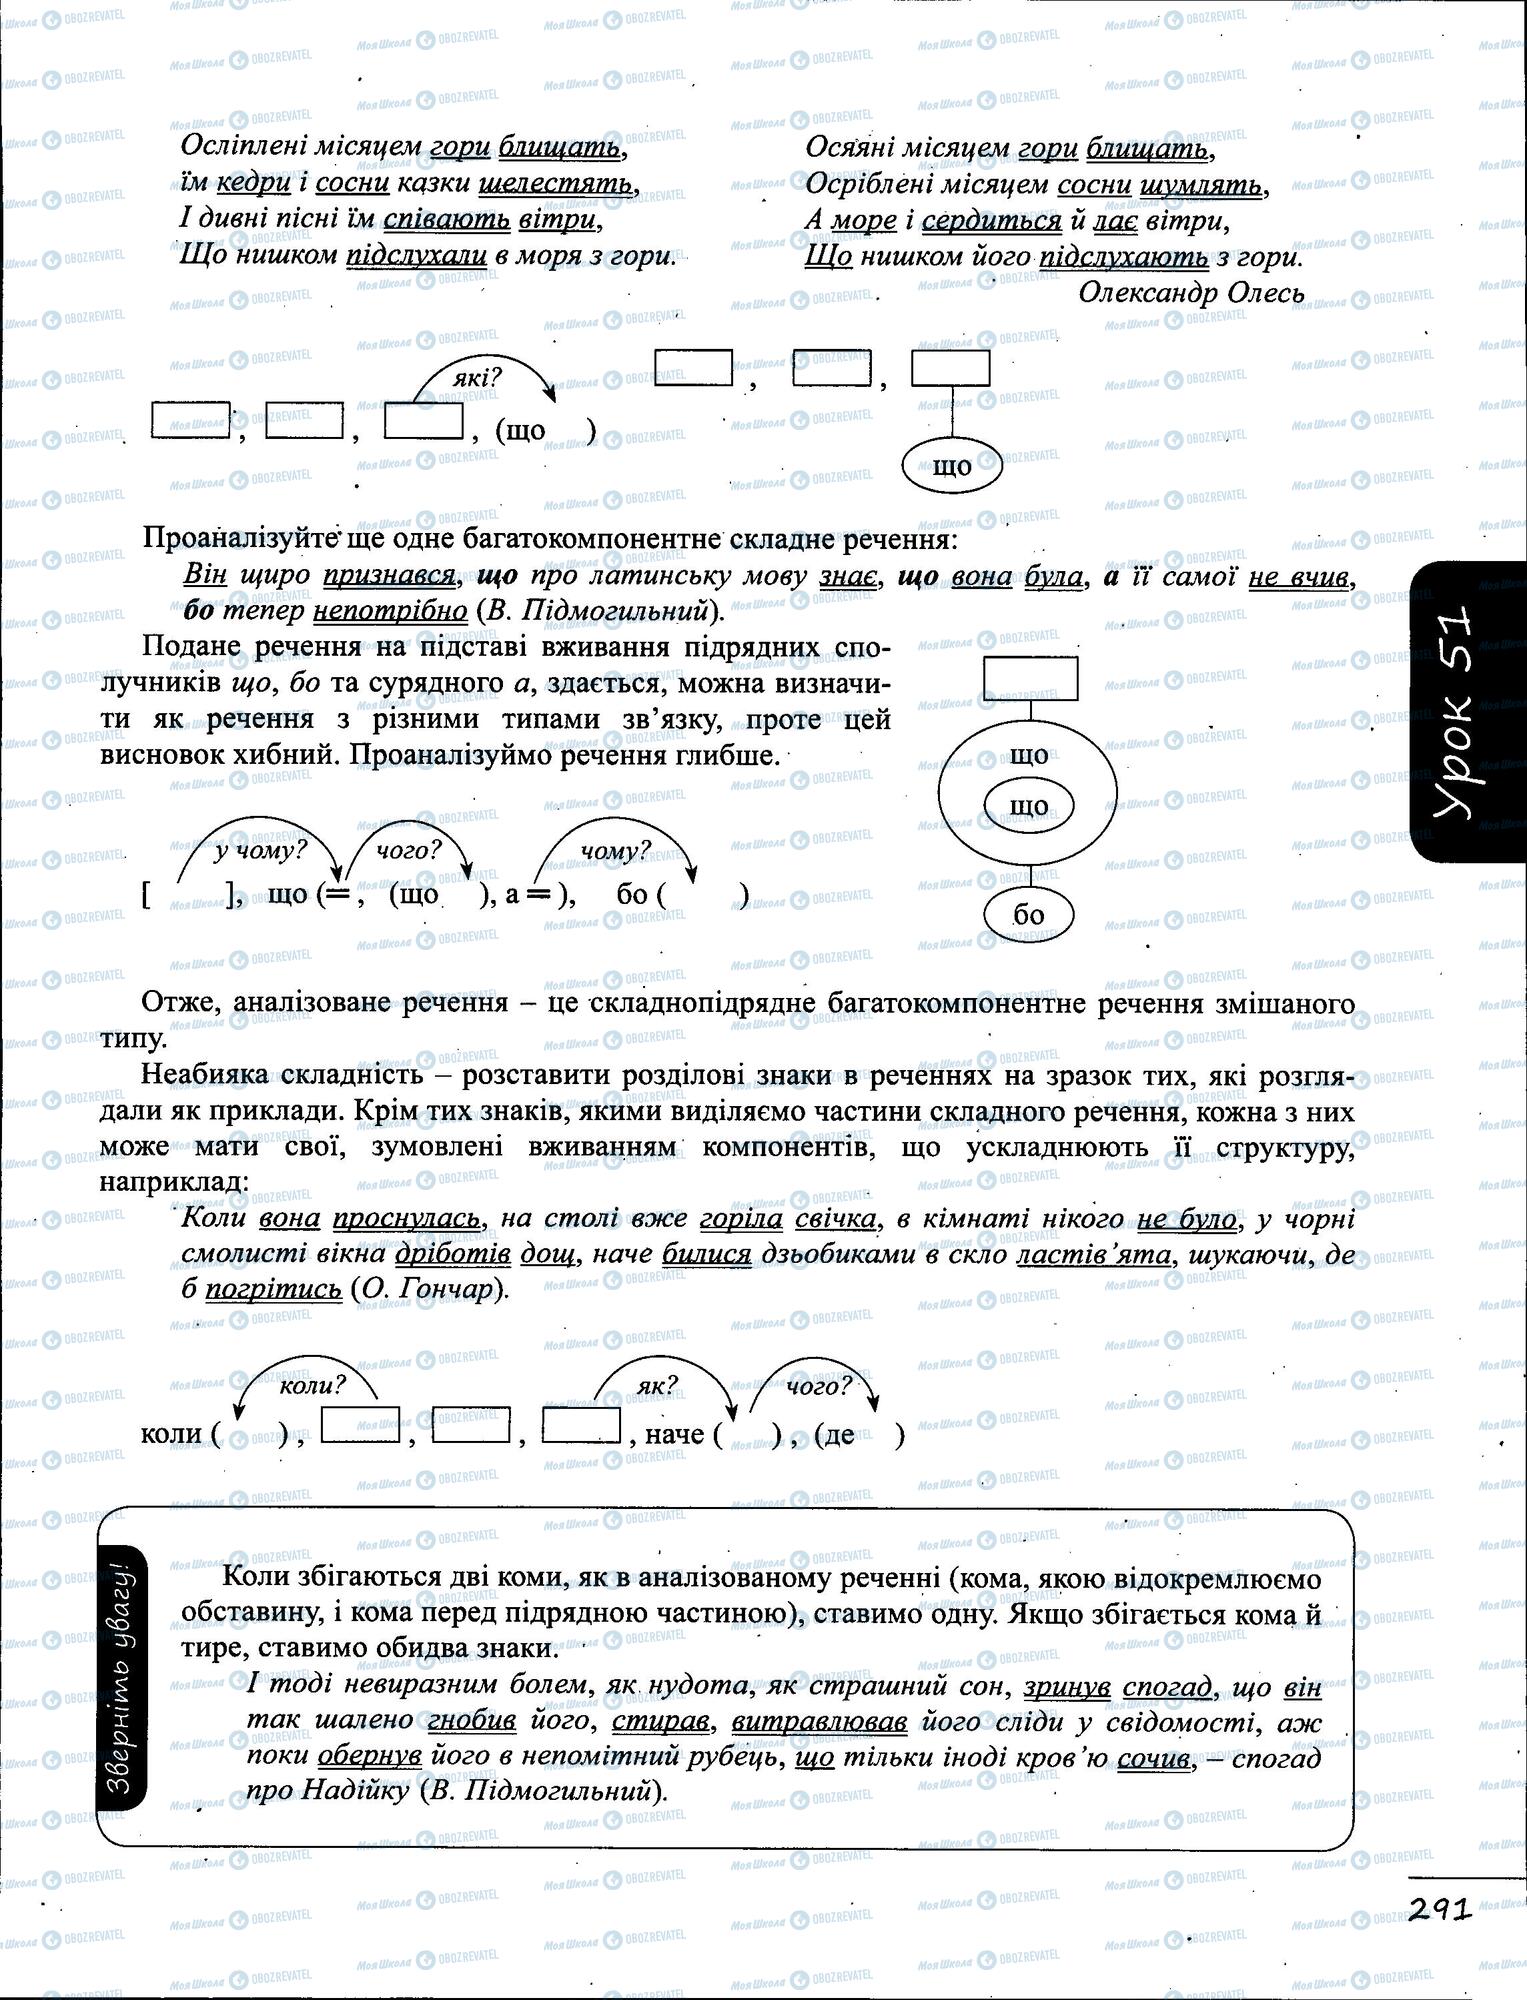 ЗНО Укр мова 11 класс страница  4